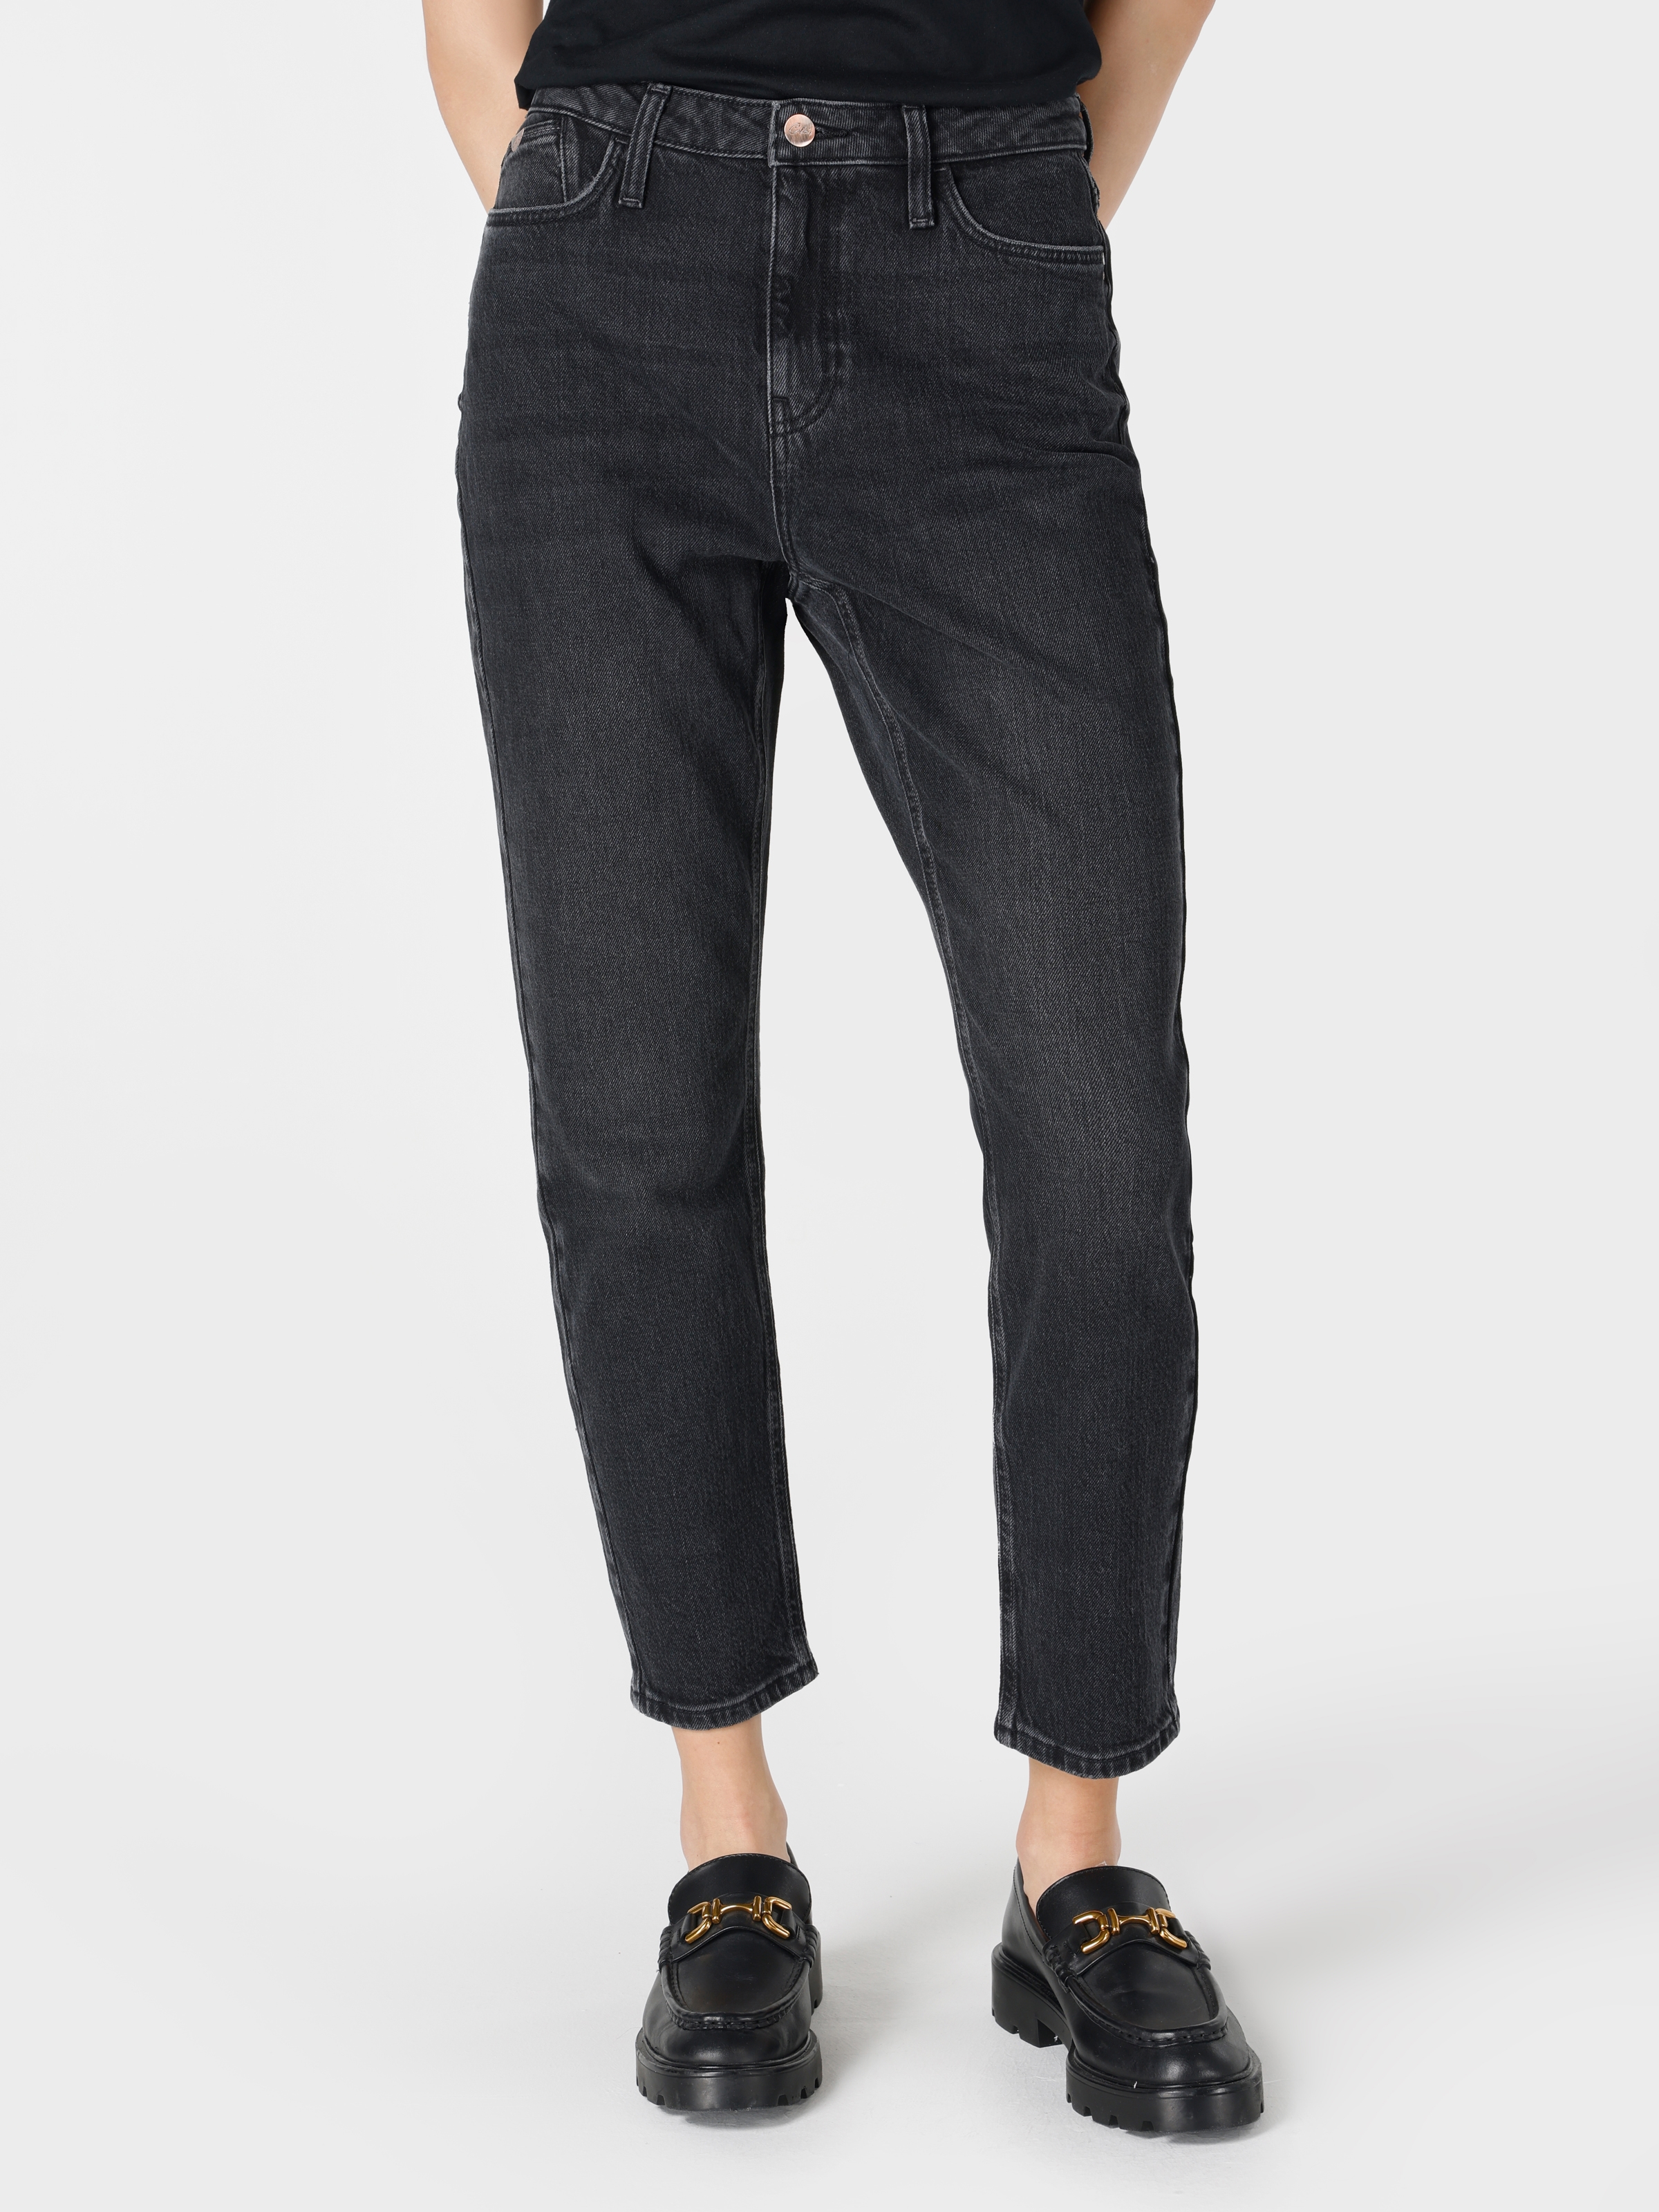 Afficher les détails de Pantalon En Jean Noir Pour Femme, Coupe Décontractée, Taille Normale